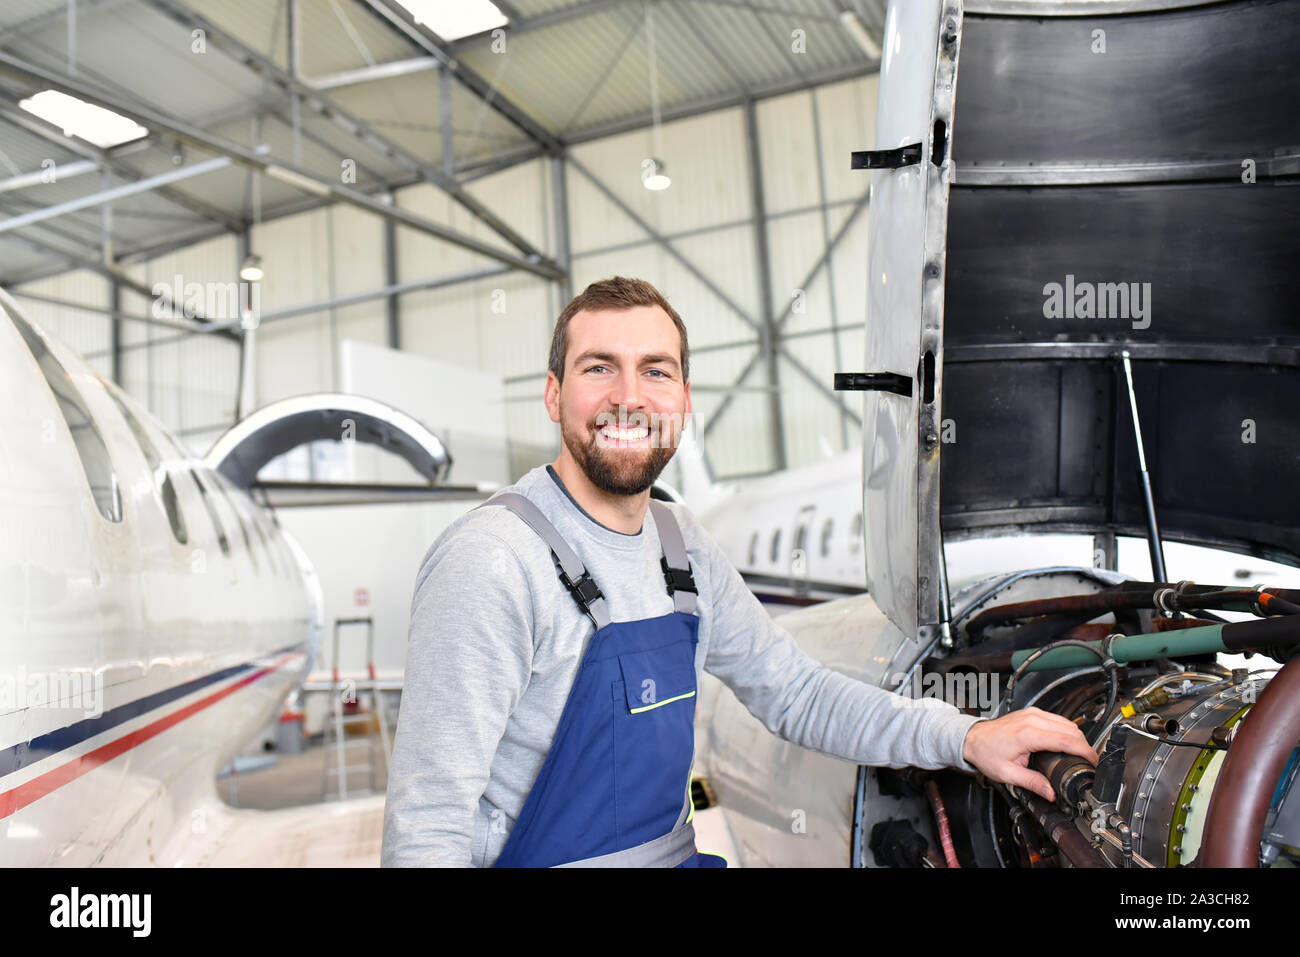 Portrait einer flugzeugmechaniker in einem Hangar mit Jets am Flughafen - Kontrolle der Flugzeuge für Sicherheit und Technische Funktion Stockfoto